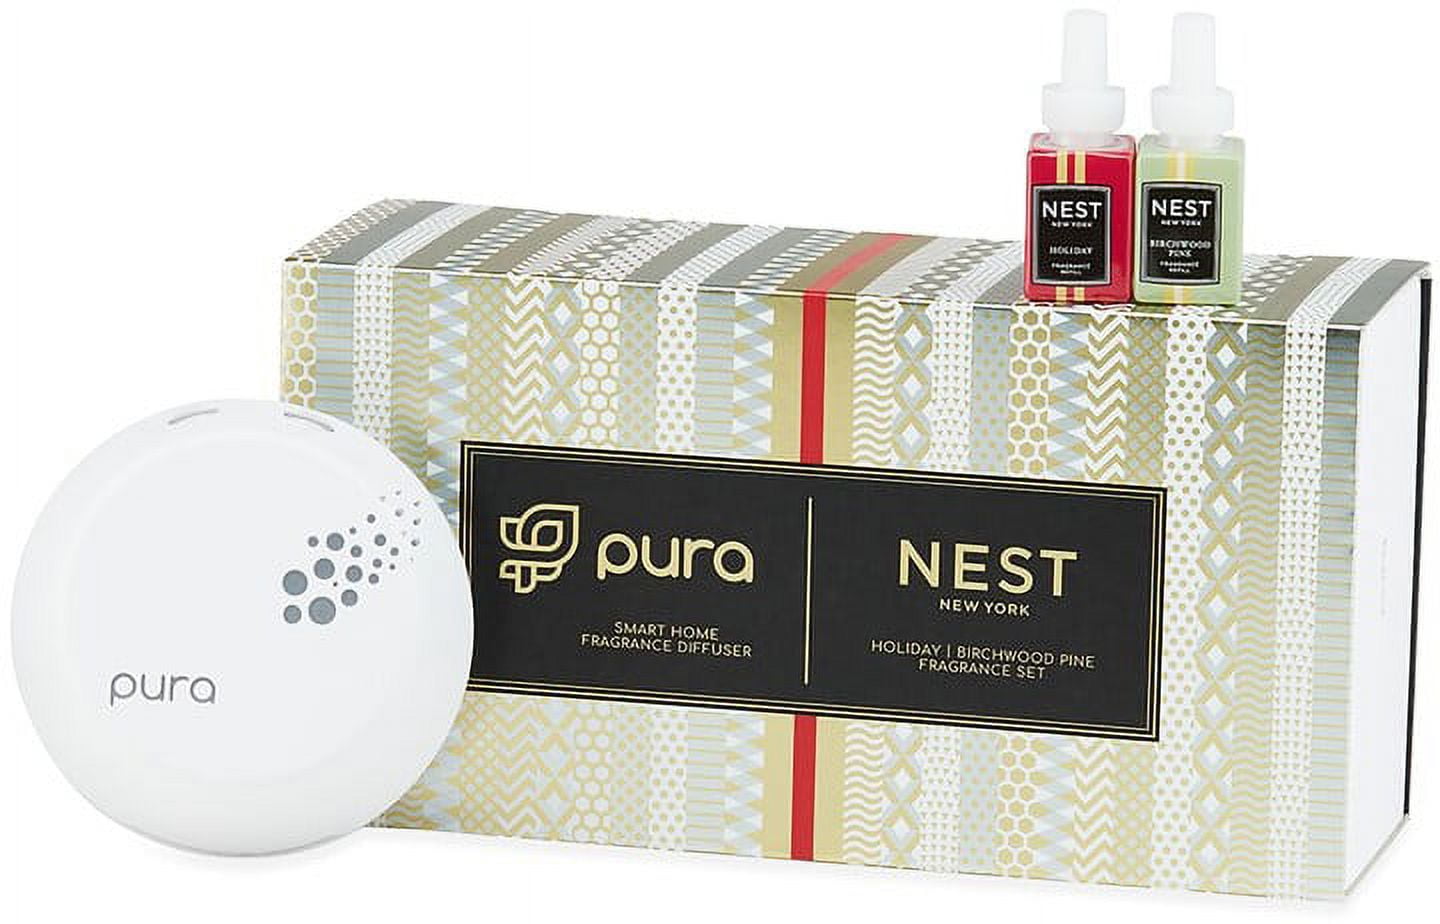 Pura - Smart Home Fragrance Diffuser - Small Town Home & Decor